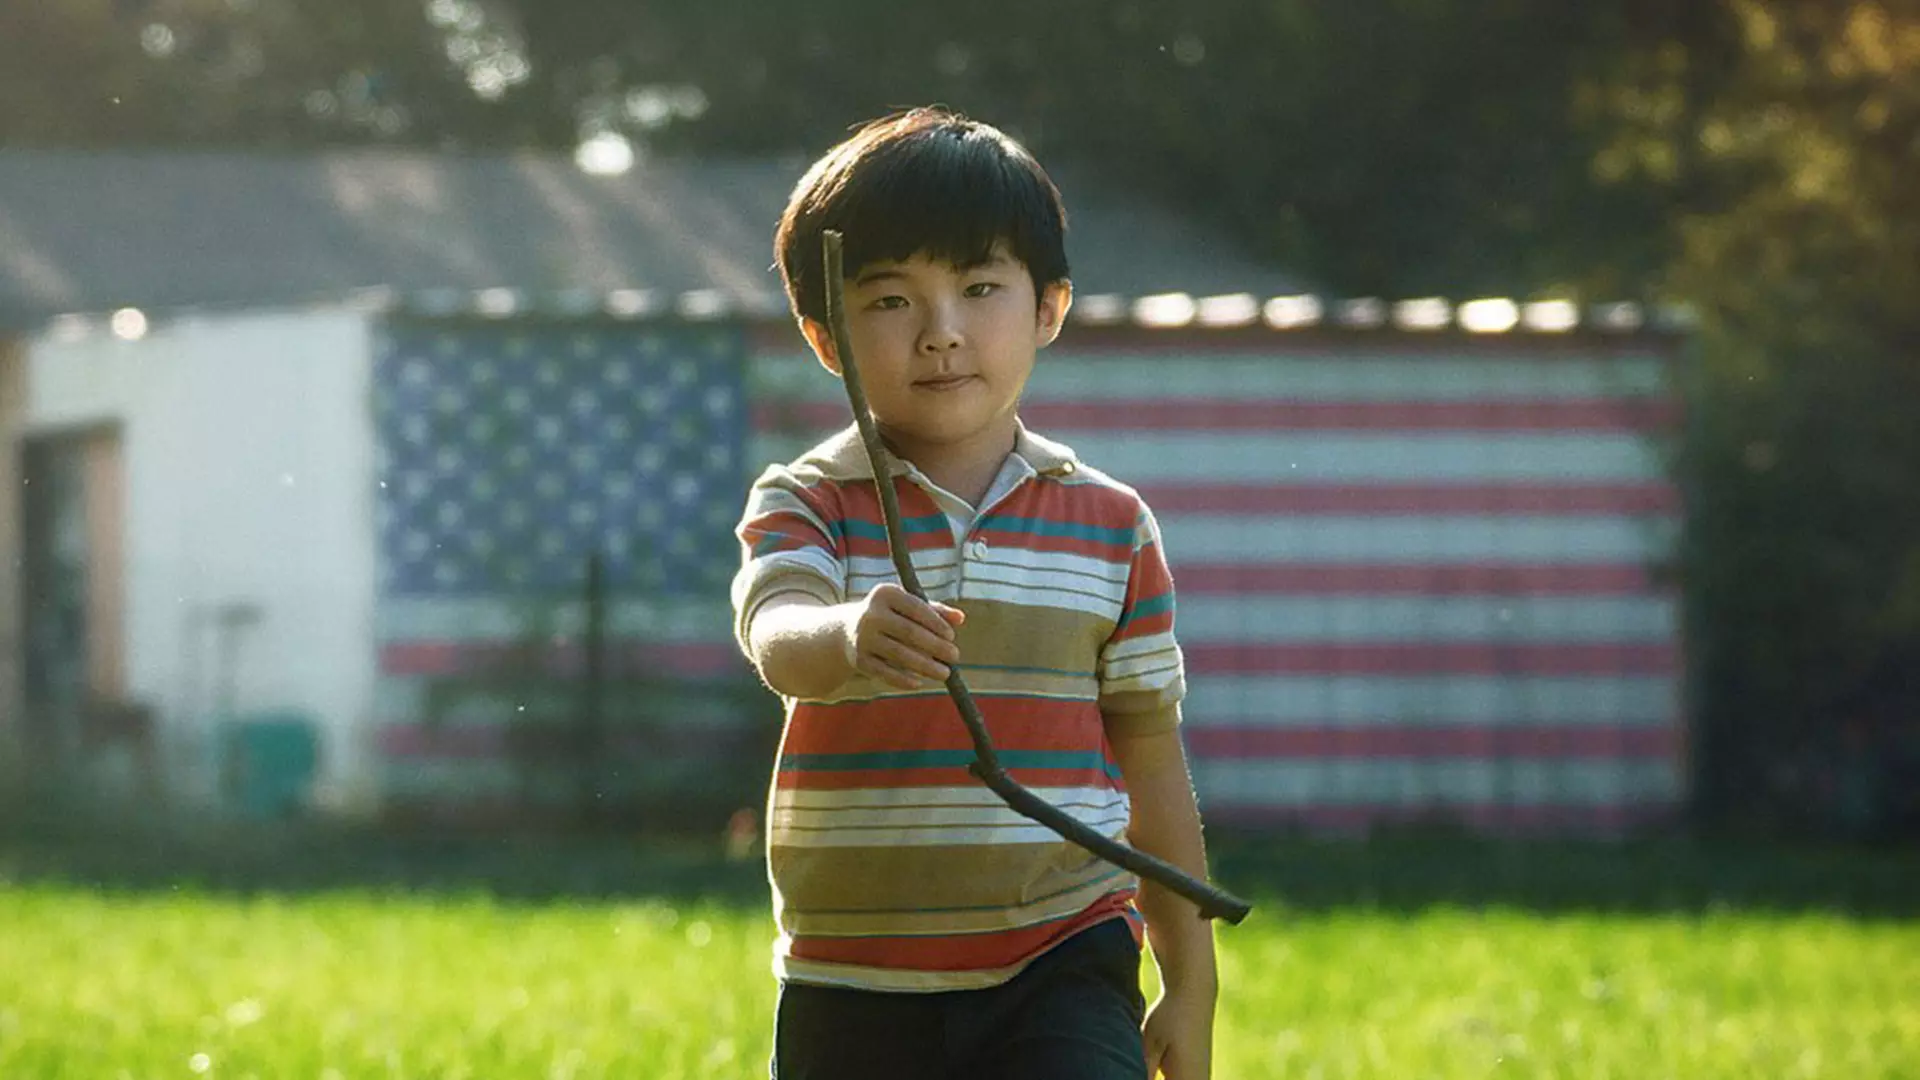 آلن کیم در نقش دیوید کودک هفت ساله با قلبی ضعیف در فیلم Minari